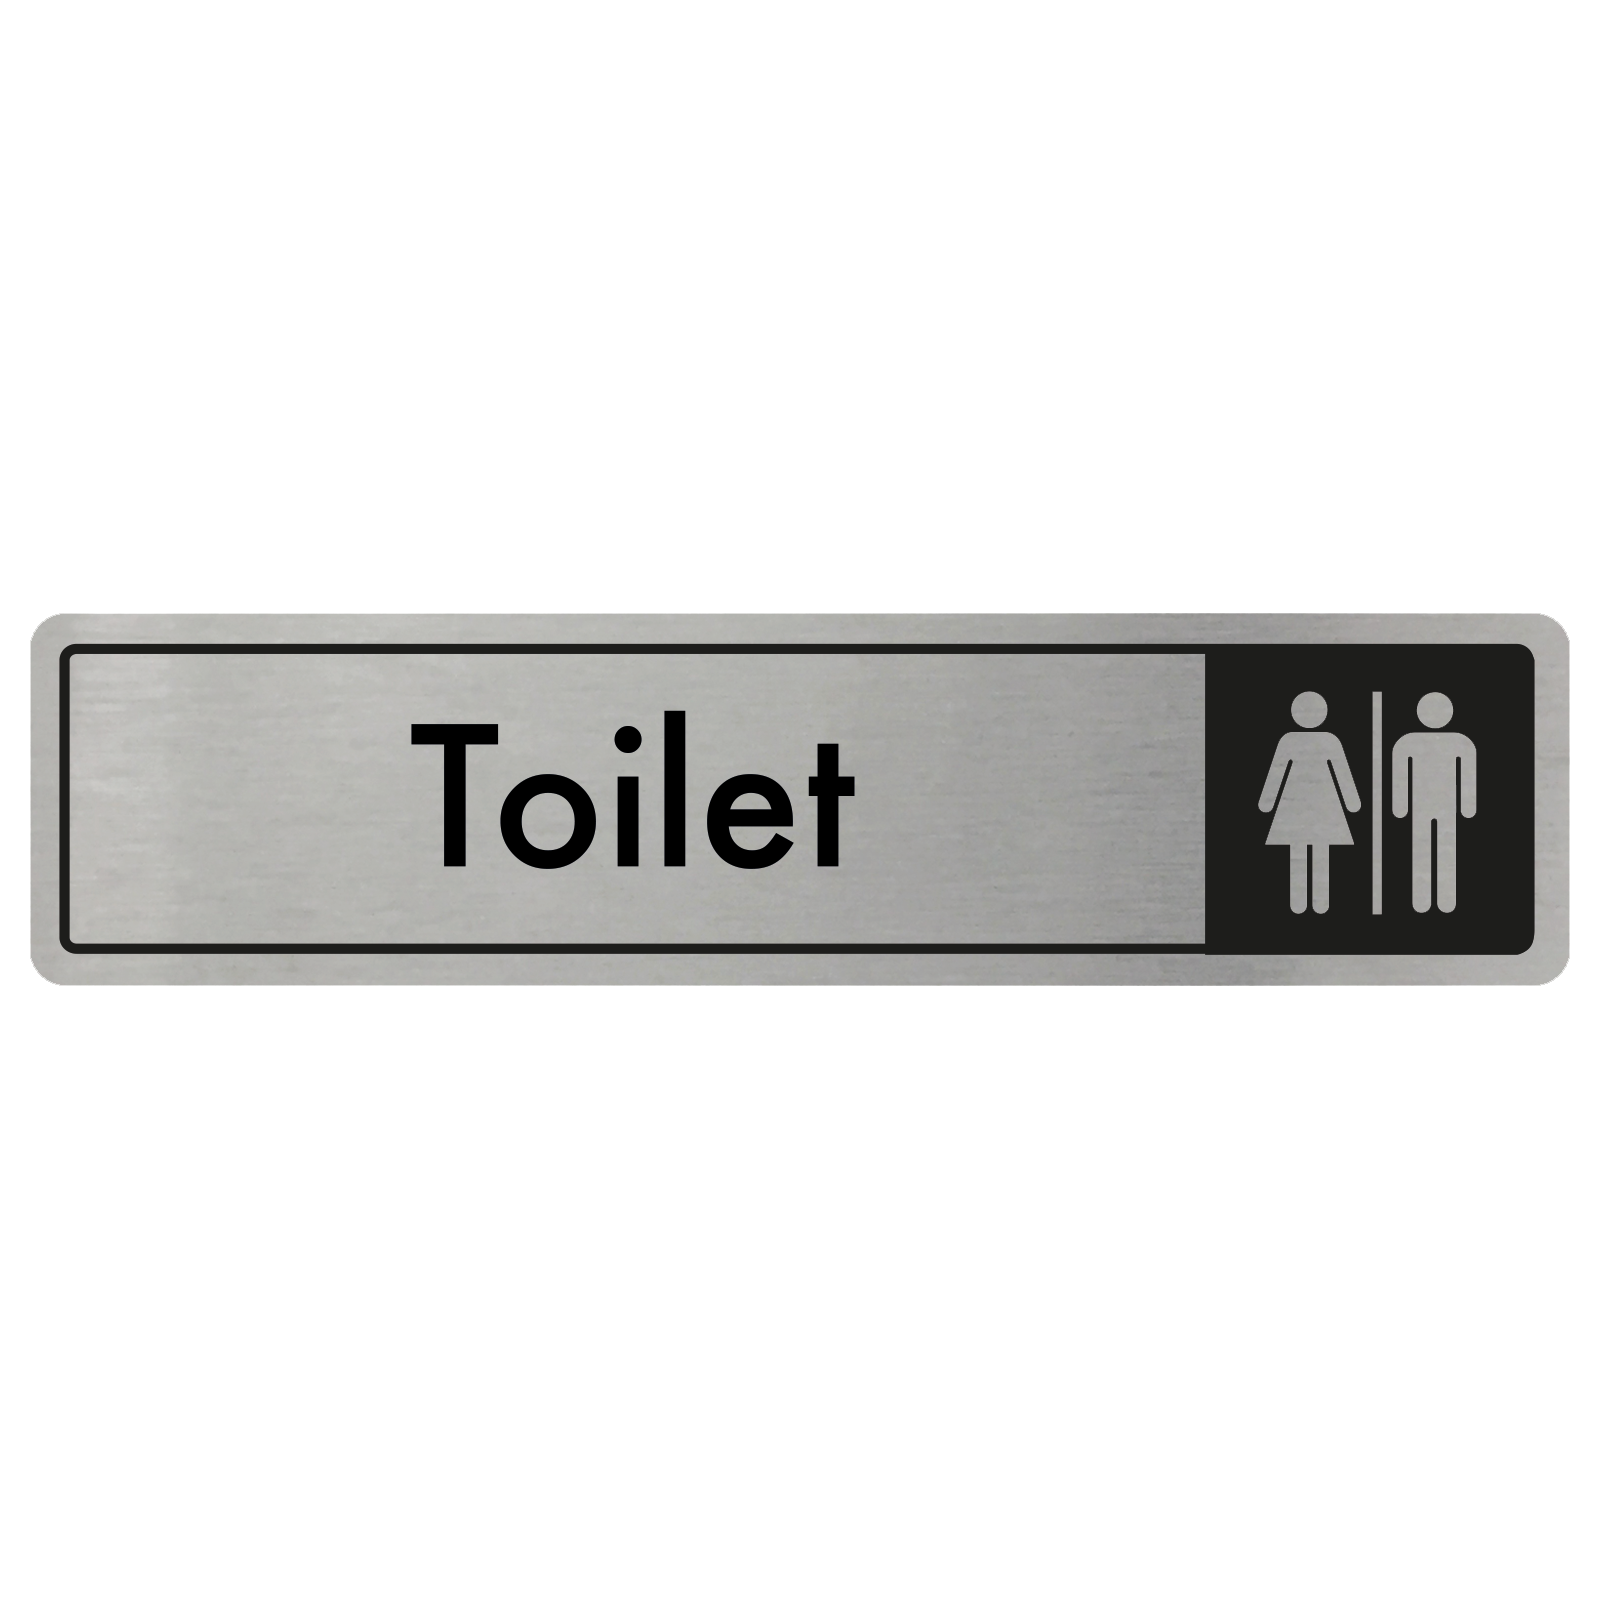 Toilet Door Sign - Black on Silver